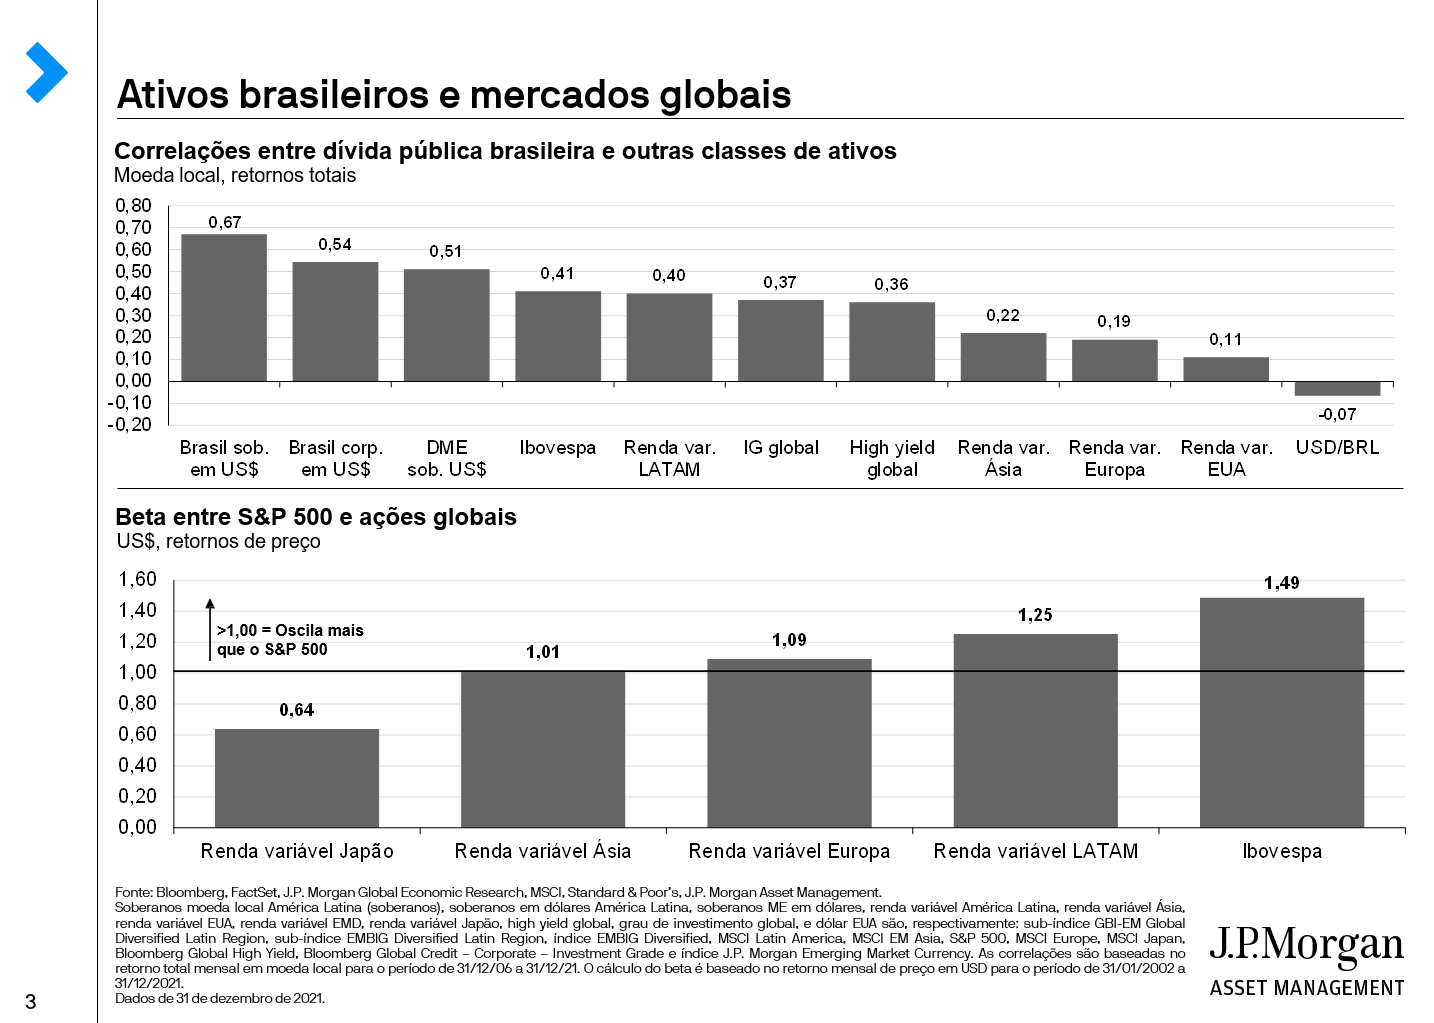 Ativos brasileiros e mercados globais